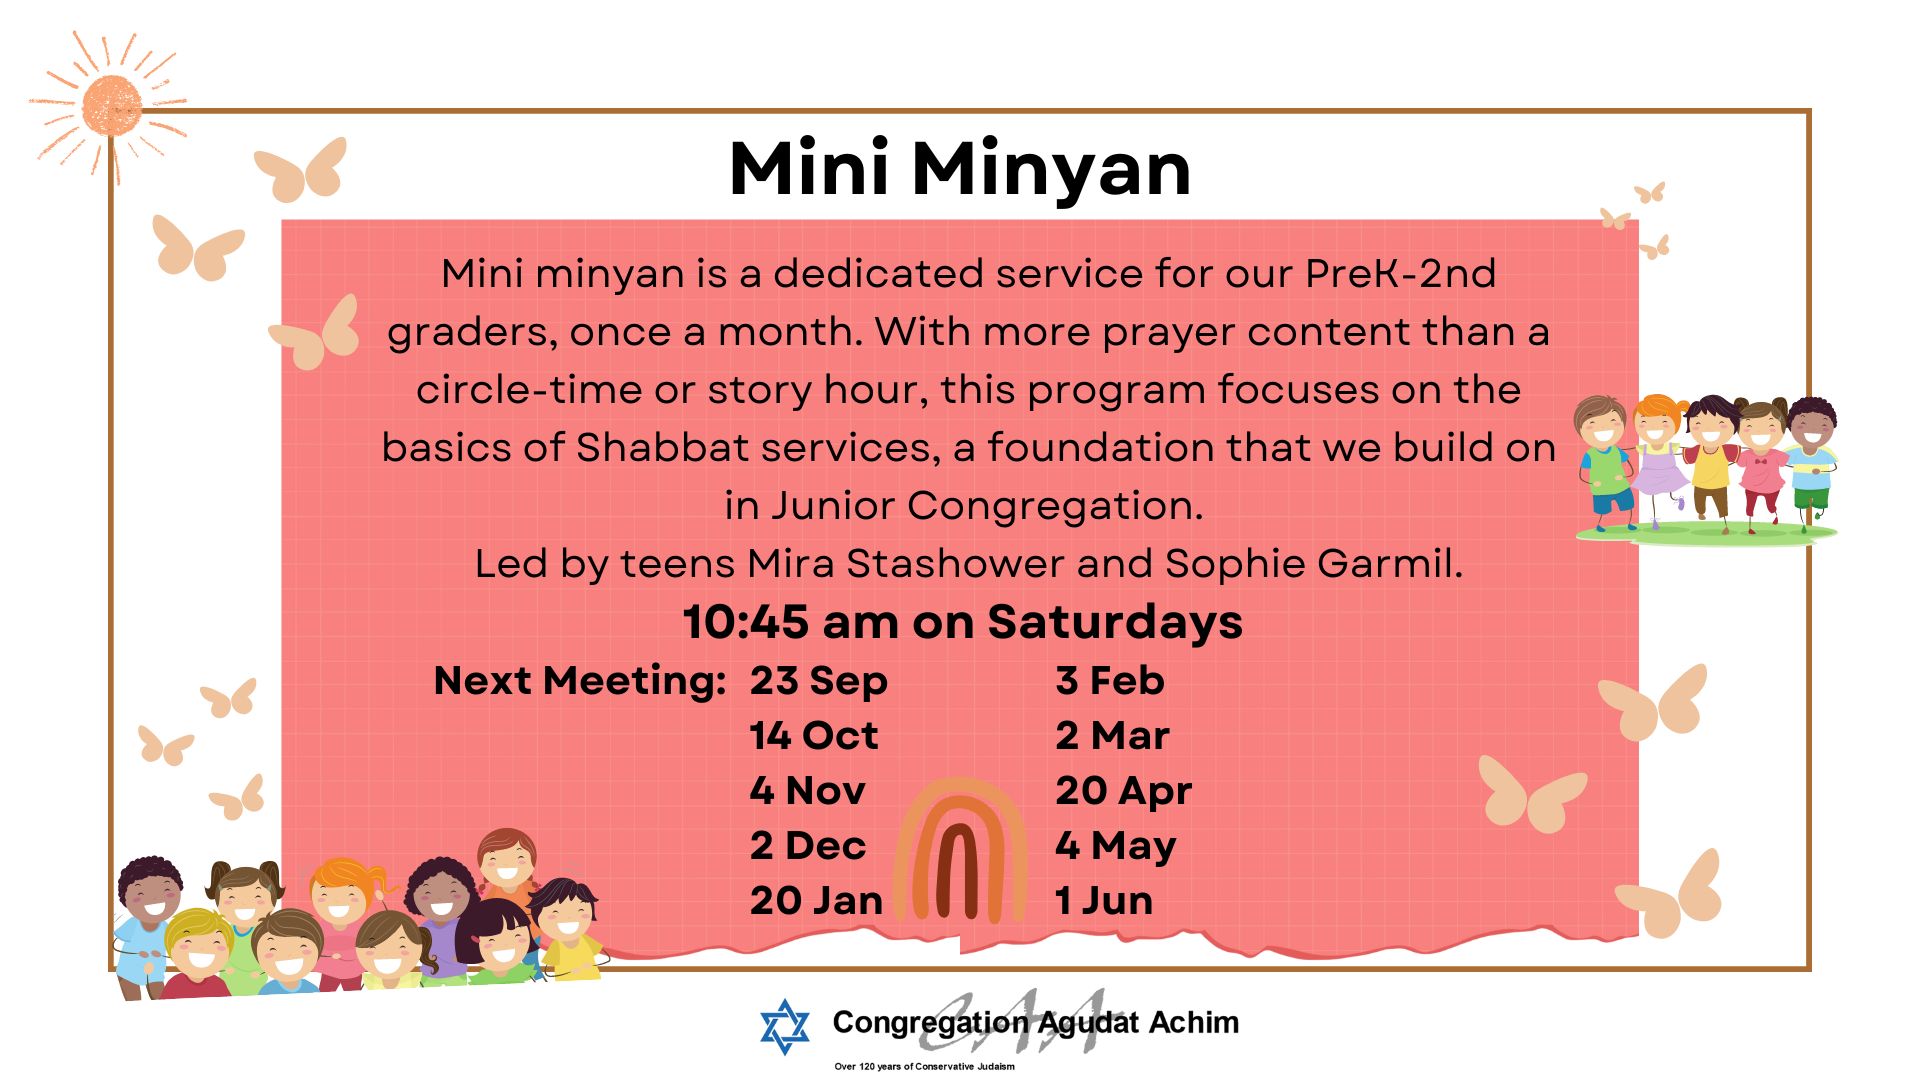 Mini Minyan